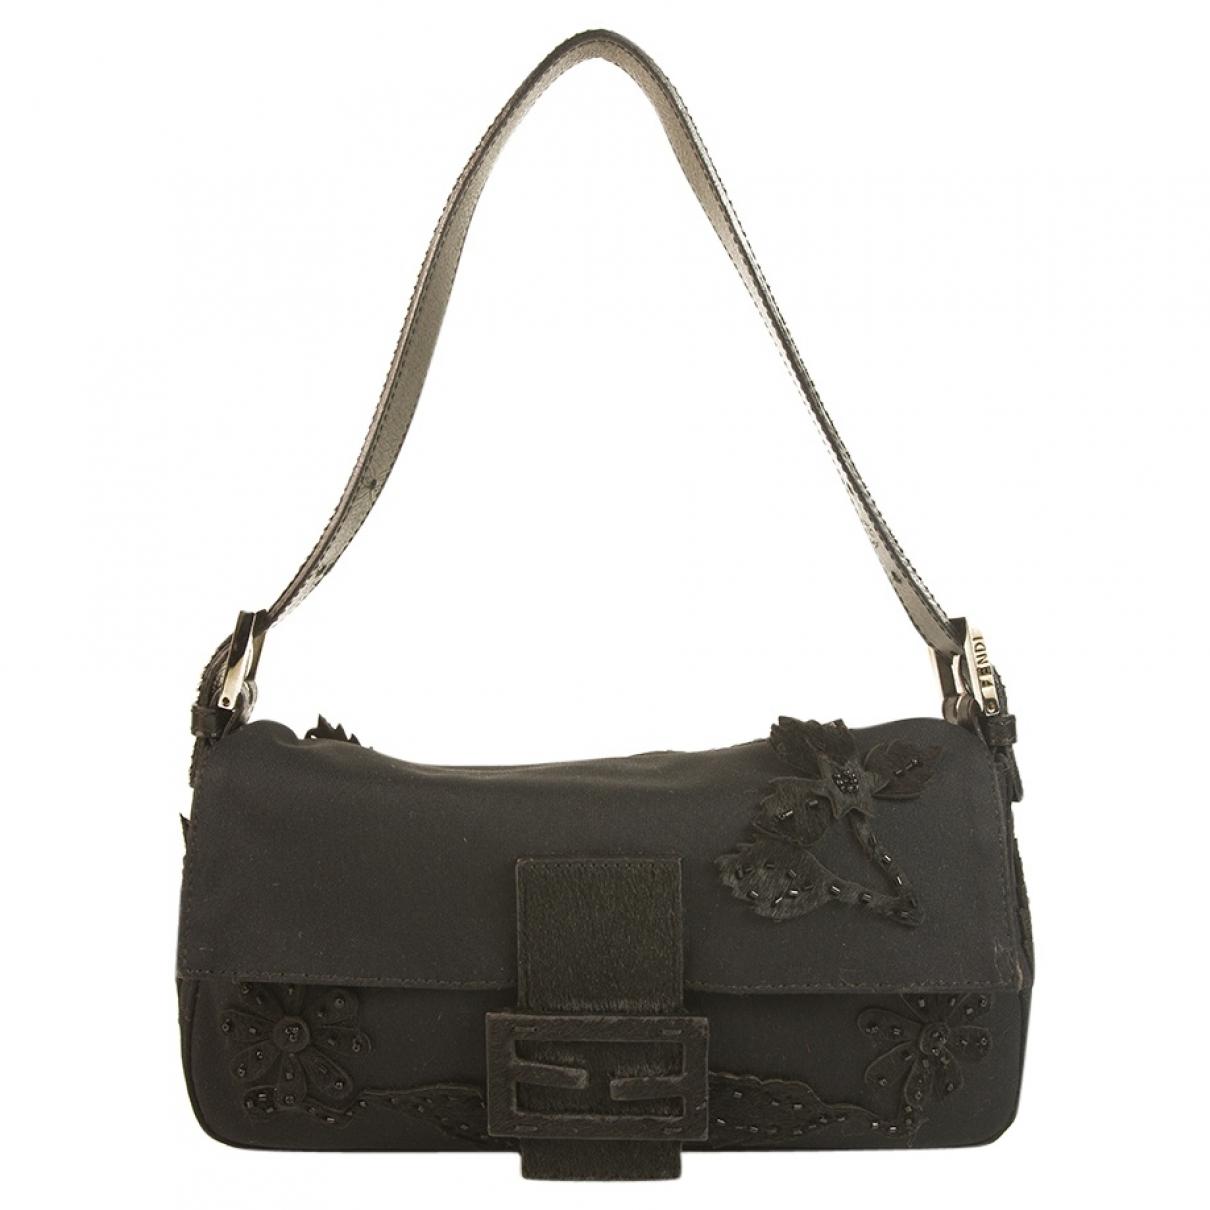 Lyst - Fendi Pre-owned Baguette Black Cloth Handbags in Black